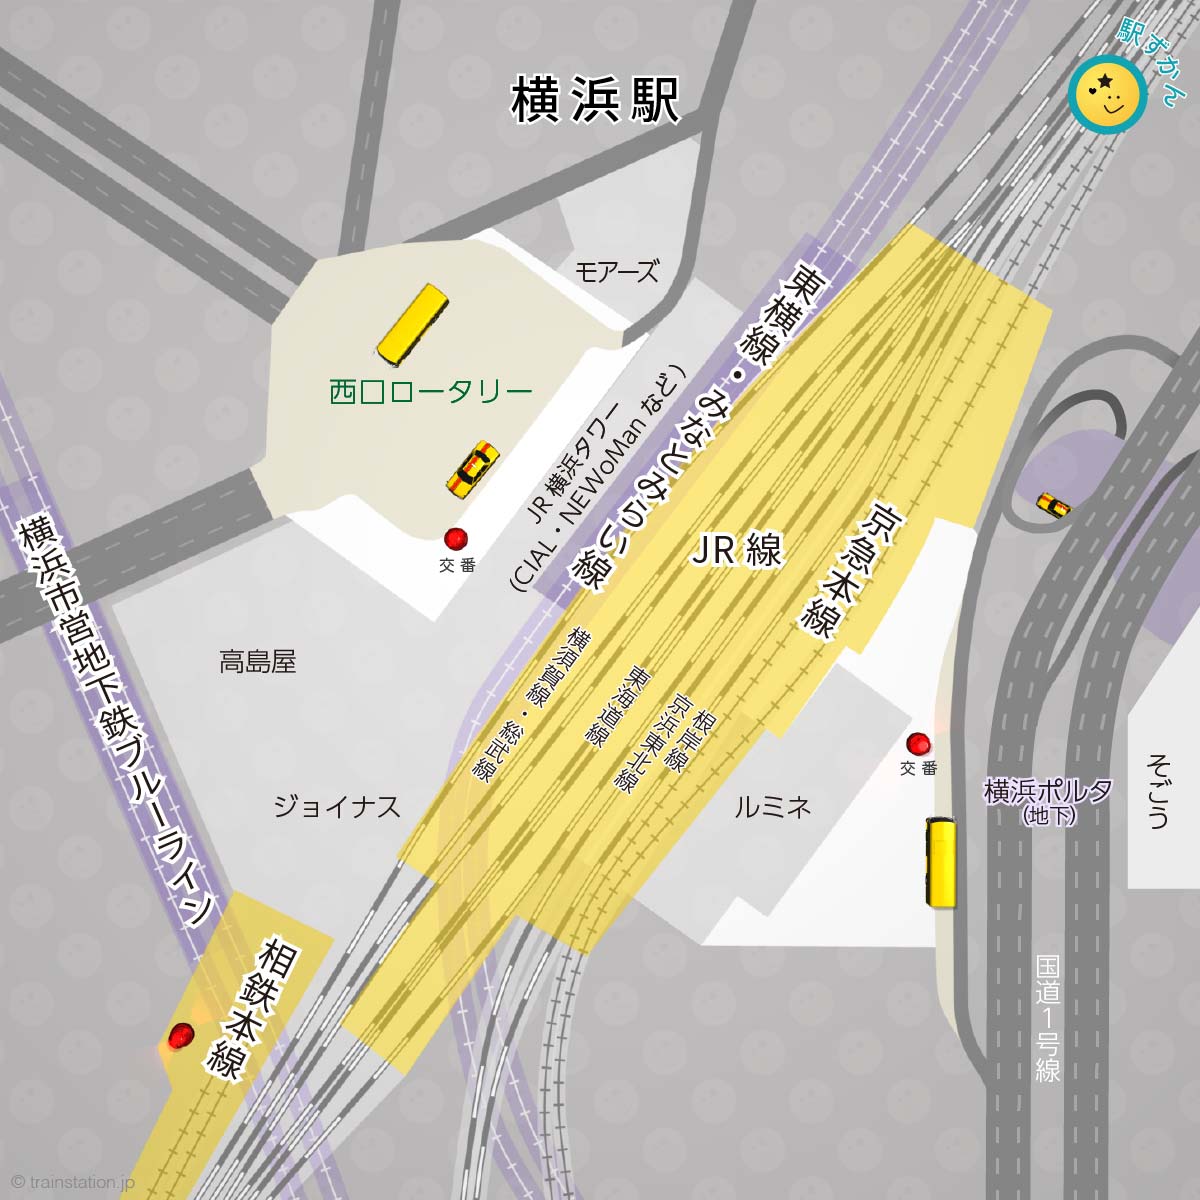 横浜駅路線図と複合商業施設マップ